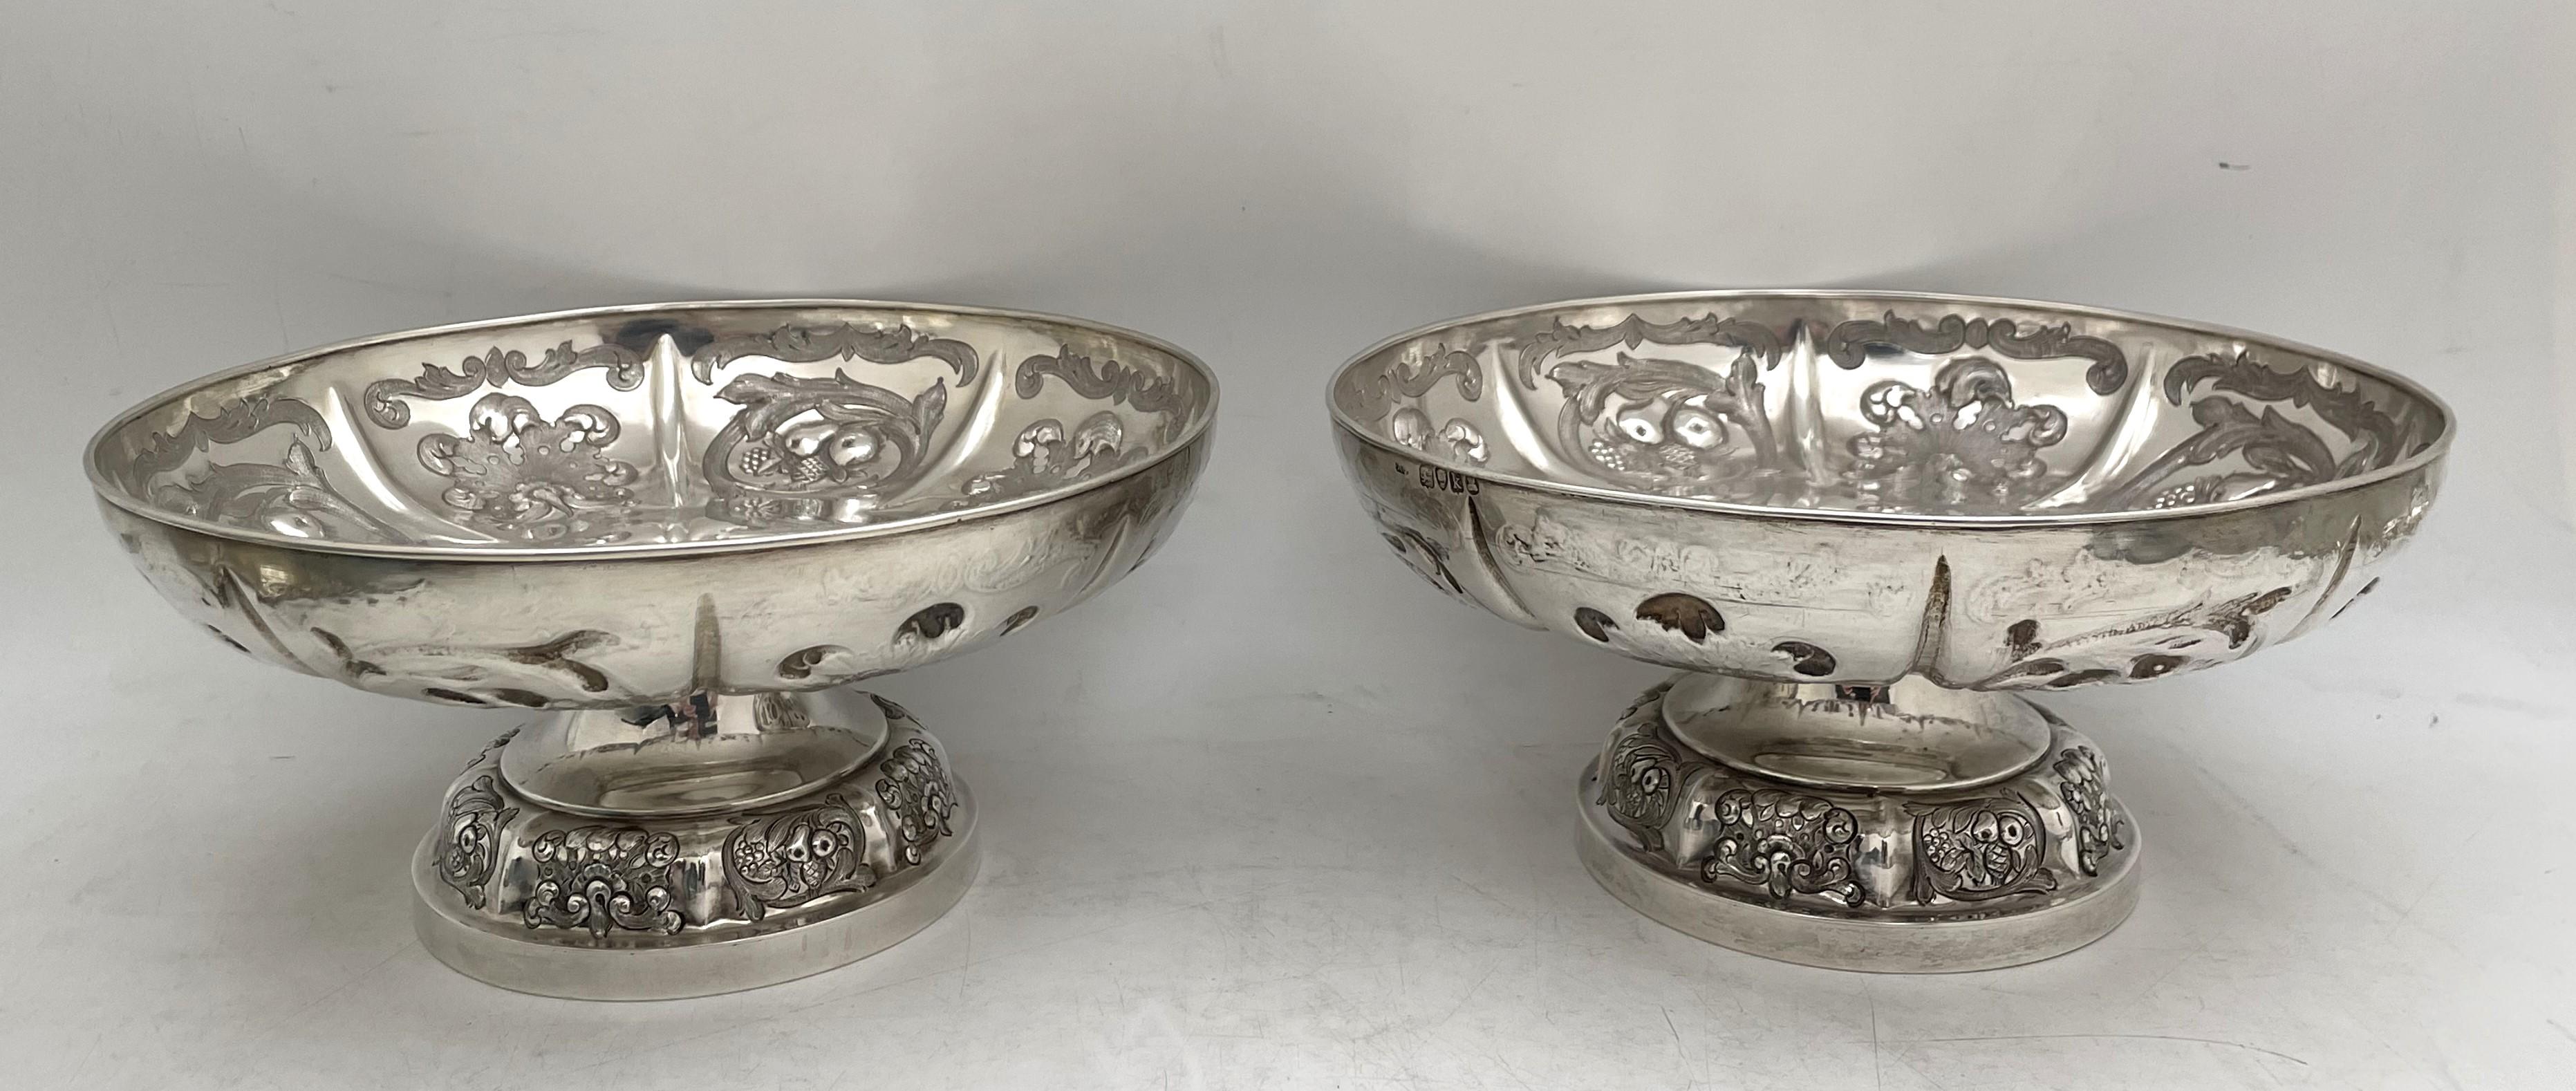 Paire de bols ou plats à pied en argent sterling Garrard, fabriqués en 1825 à l'époque géorgienne, magnifiquement ornés de motifs géométriques et naturels stylisés en relief. Ils mesurent 8'' de diamètre par 3 7/8'' de hauteur, pèsent 39 onces troy